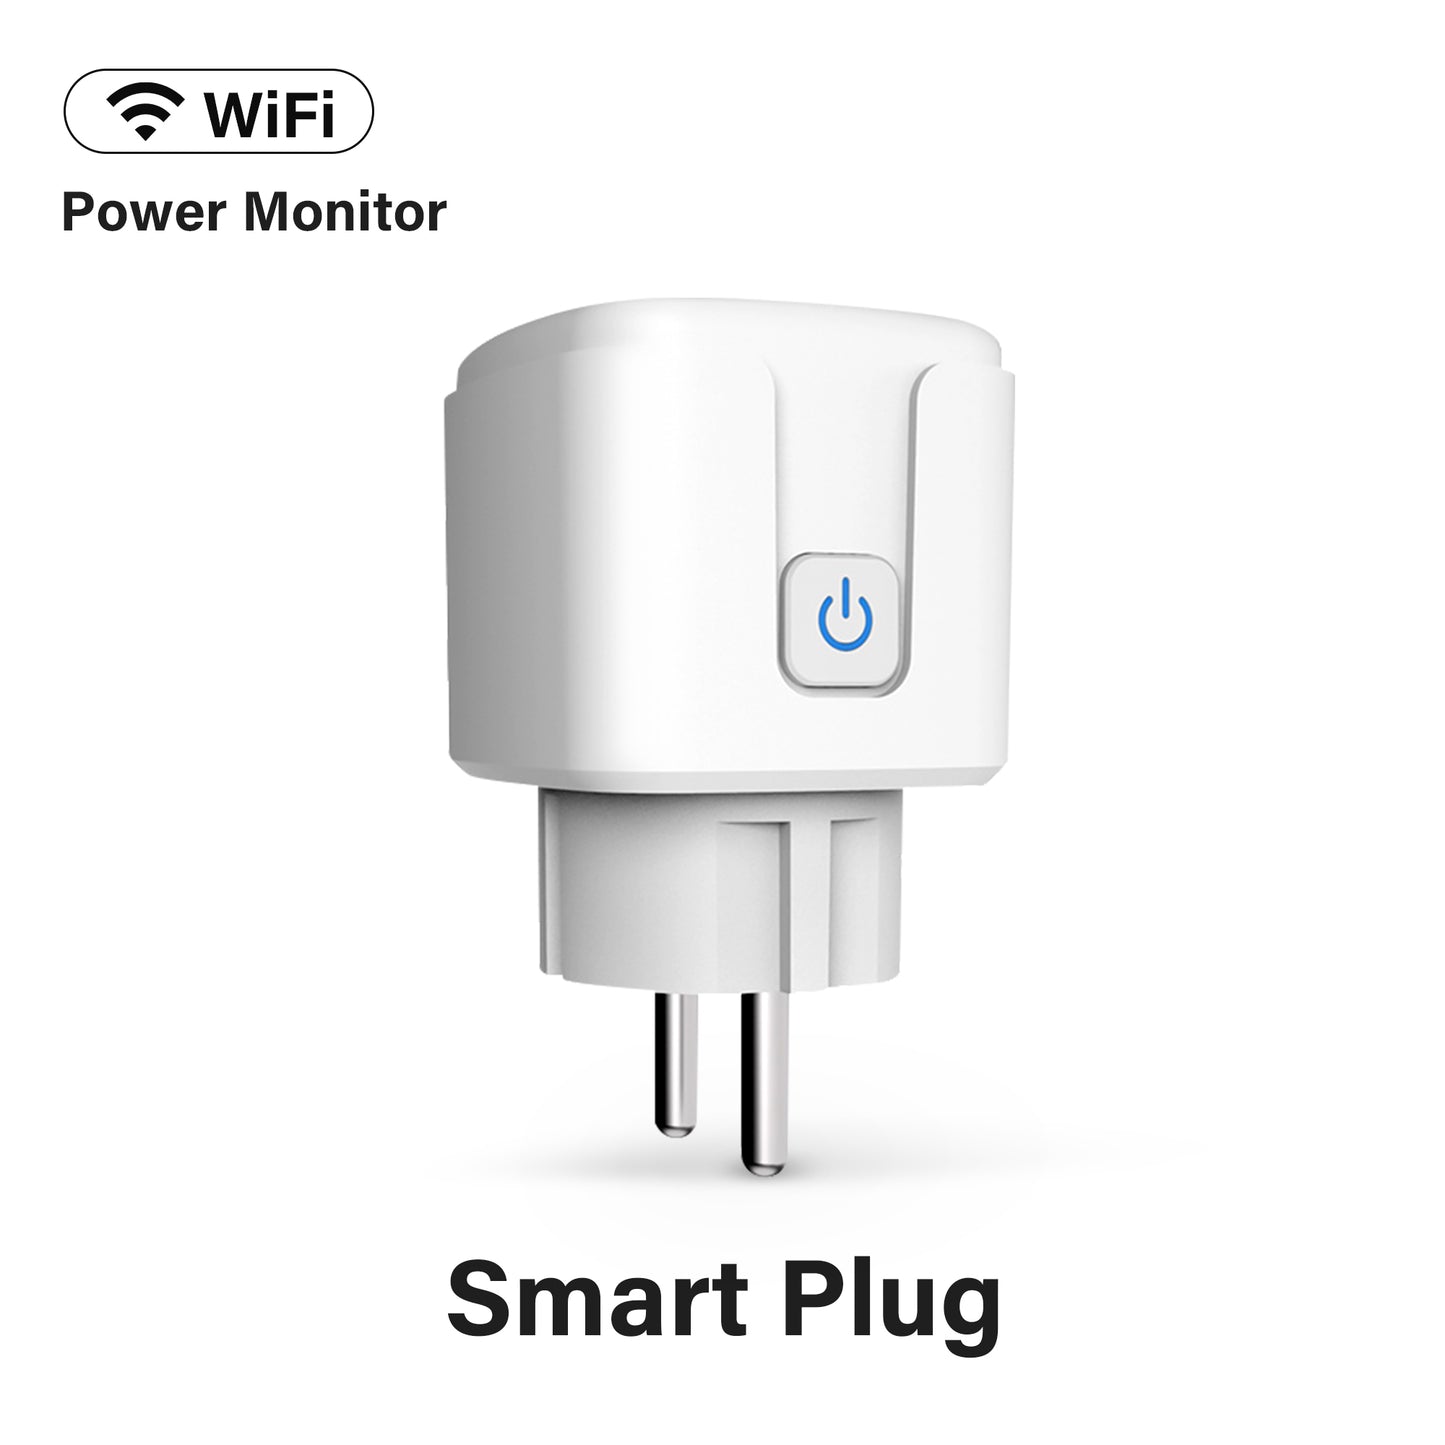 16A EU Smart Wifi Power Plug with Power Monitor Smart Home Wifi